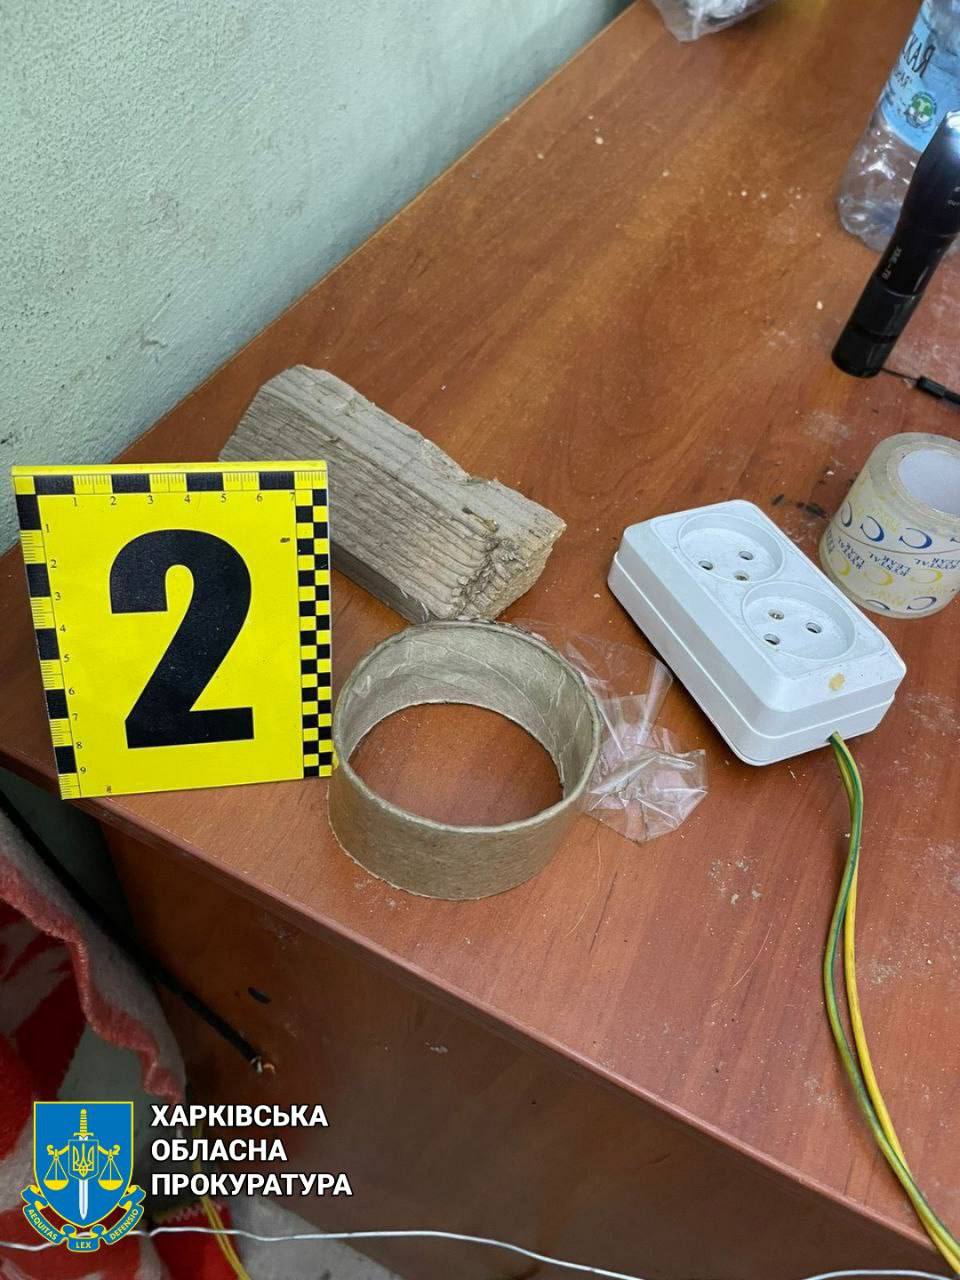 Скоч и электричество - предметы для пыток нашли в застенках на Харьковщине